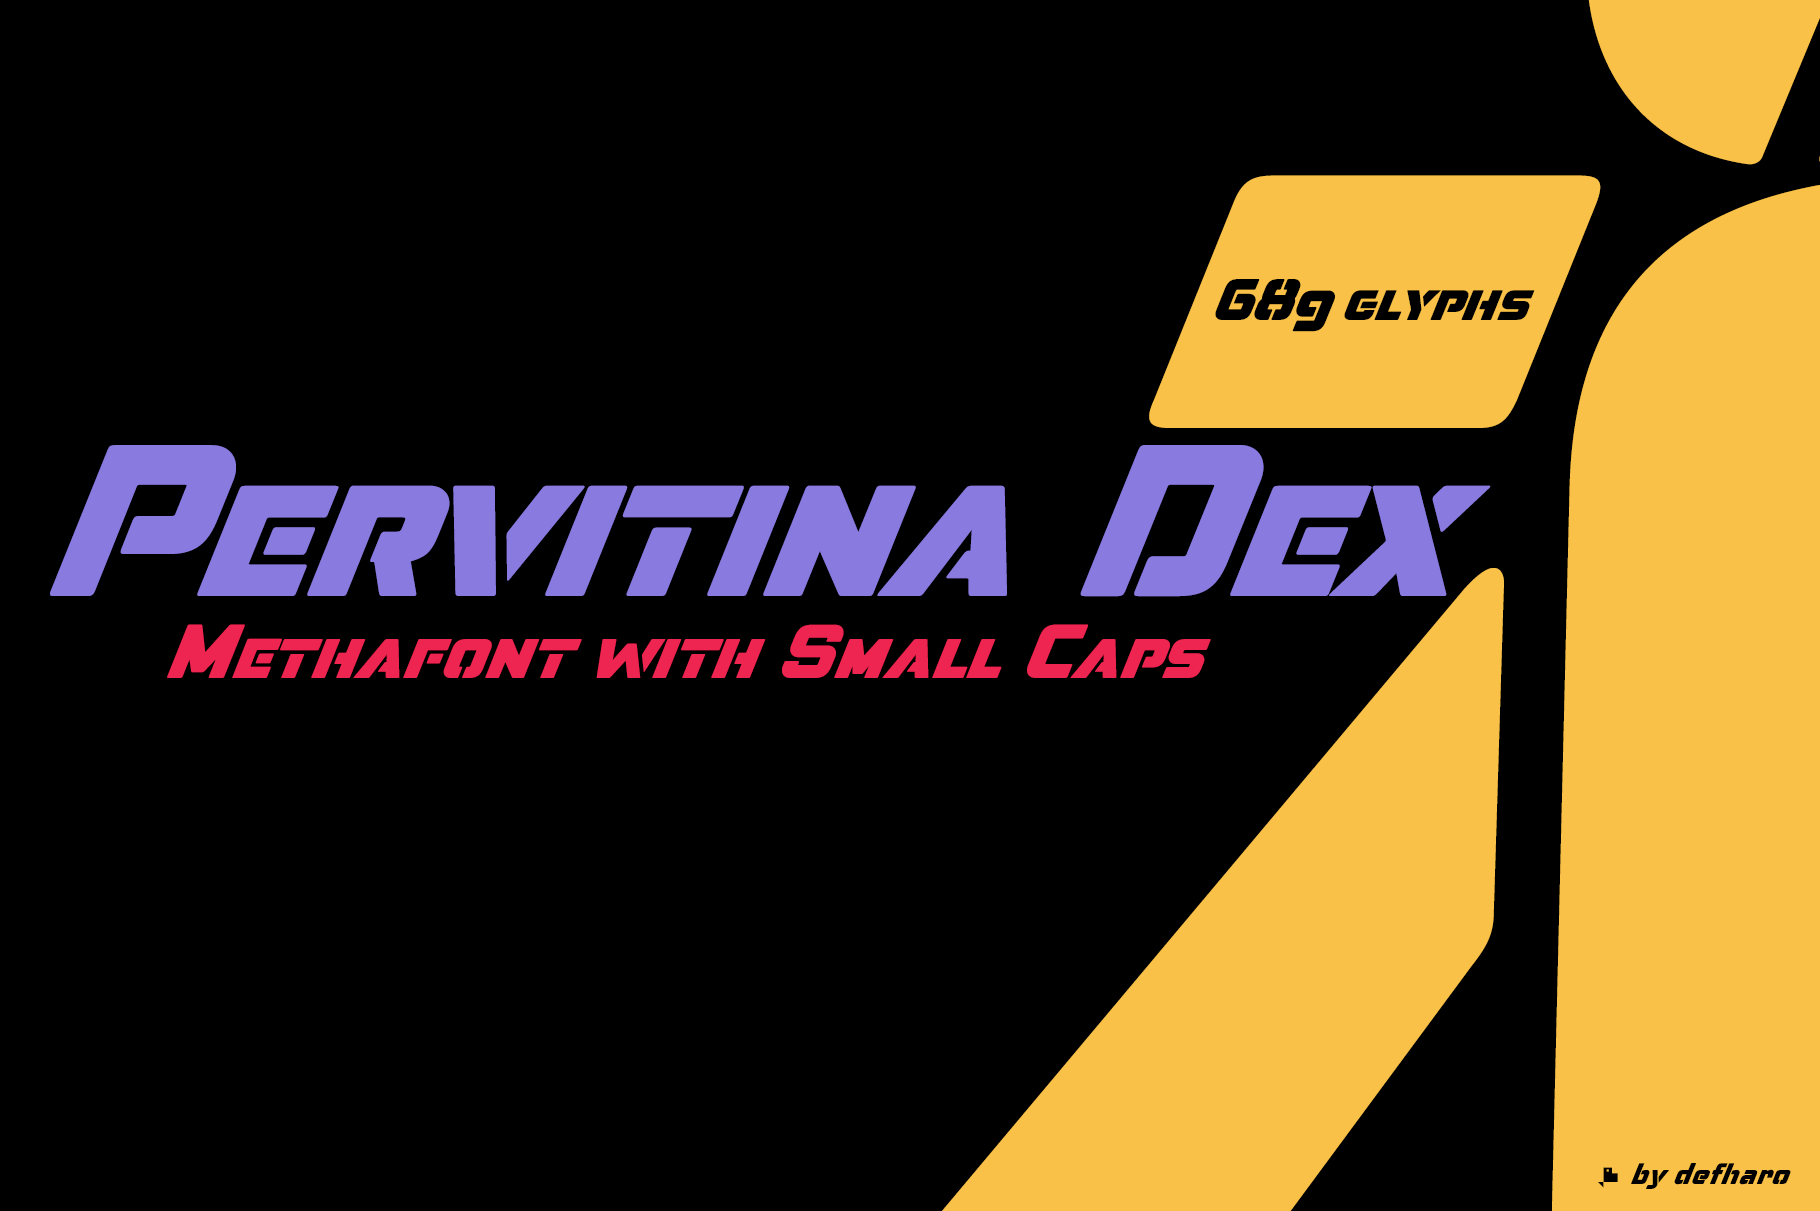 Pervitina-dex-small-caps